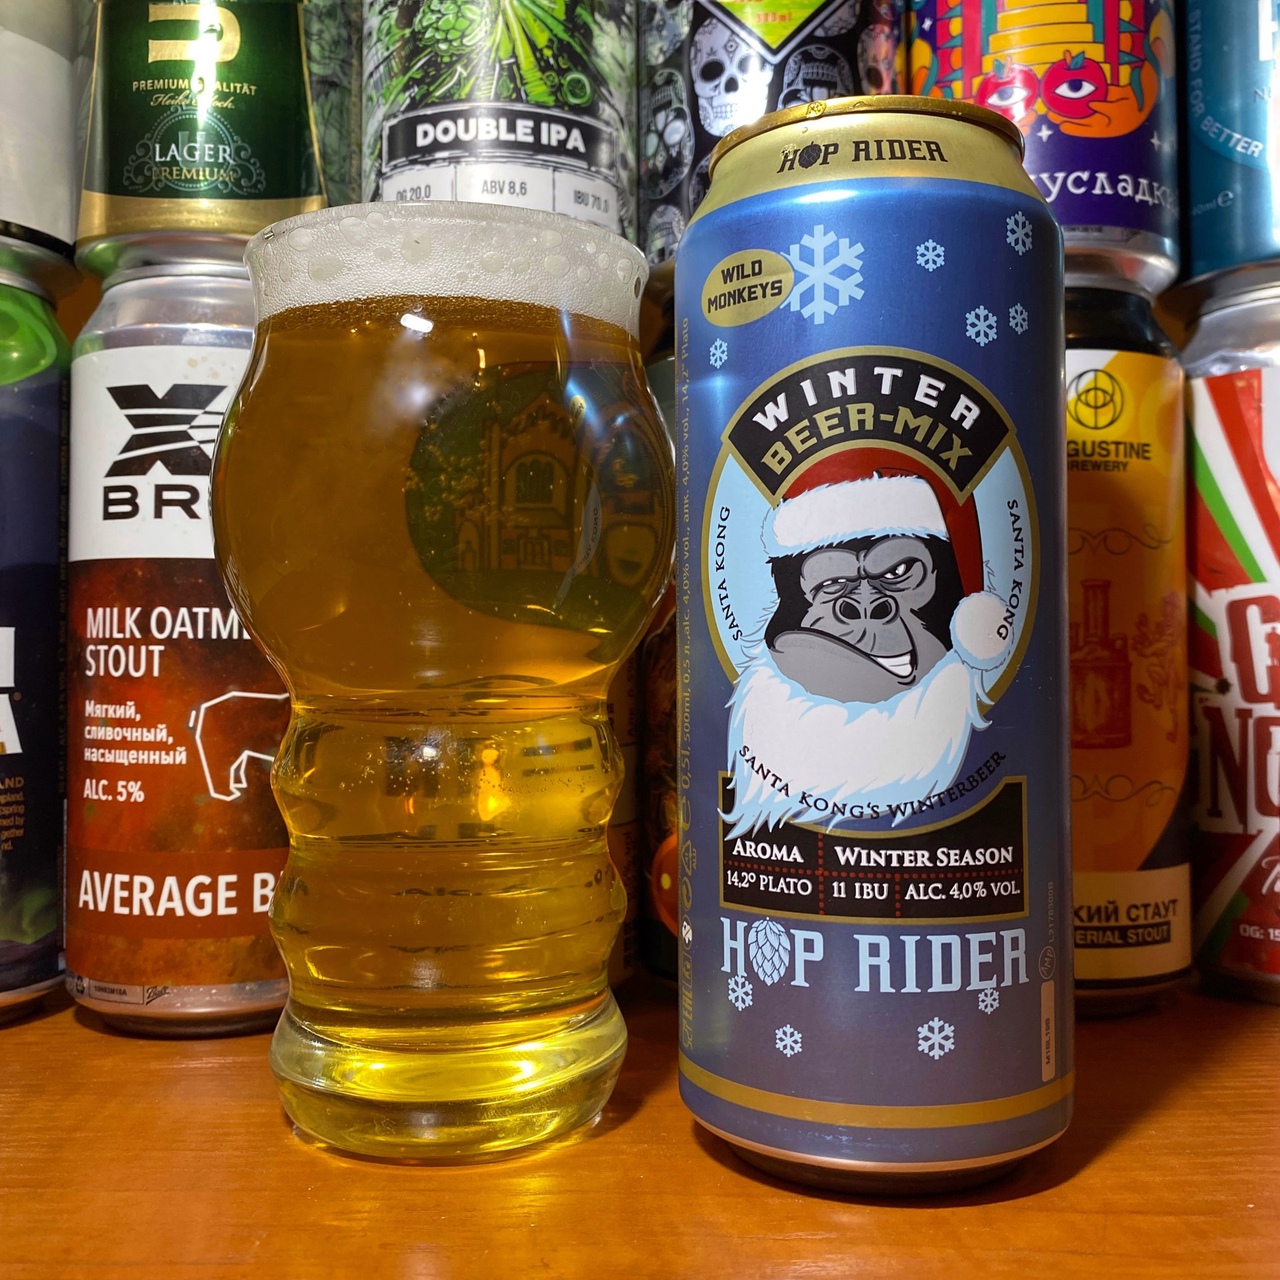 Beer mix. Пиво Райдер. Hop Rider пиво вкусы. Хоп Райдер ИПА. Хот Райдер пиво.